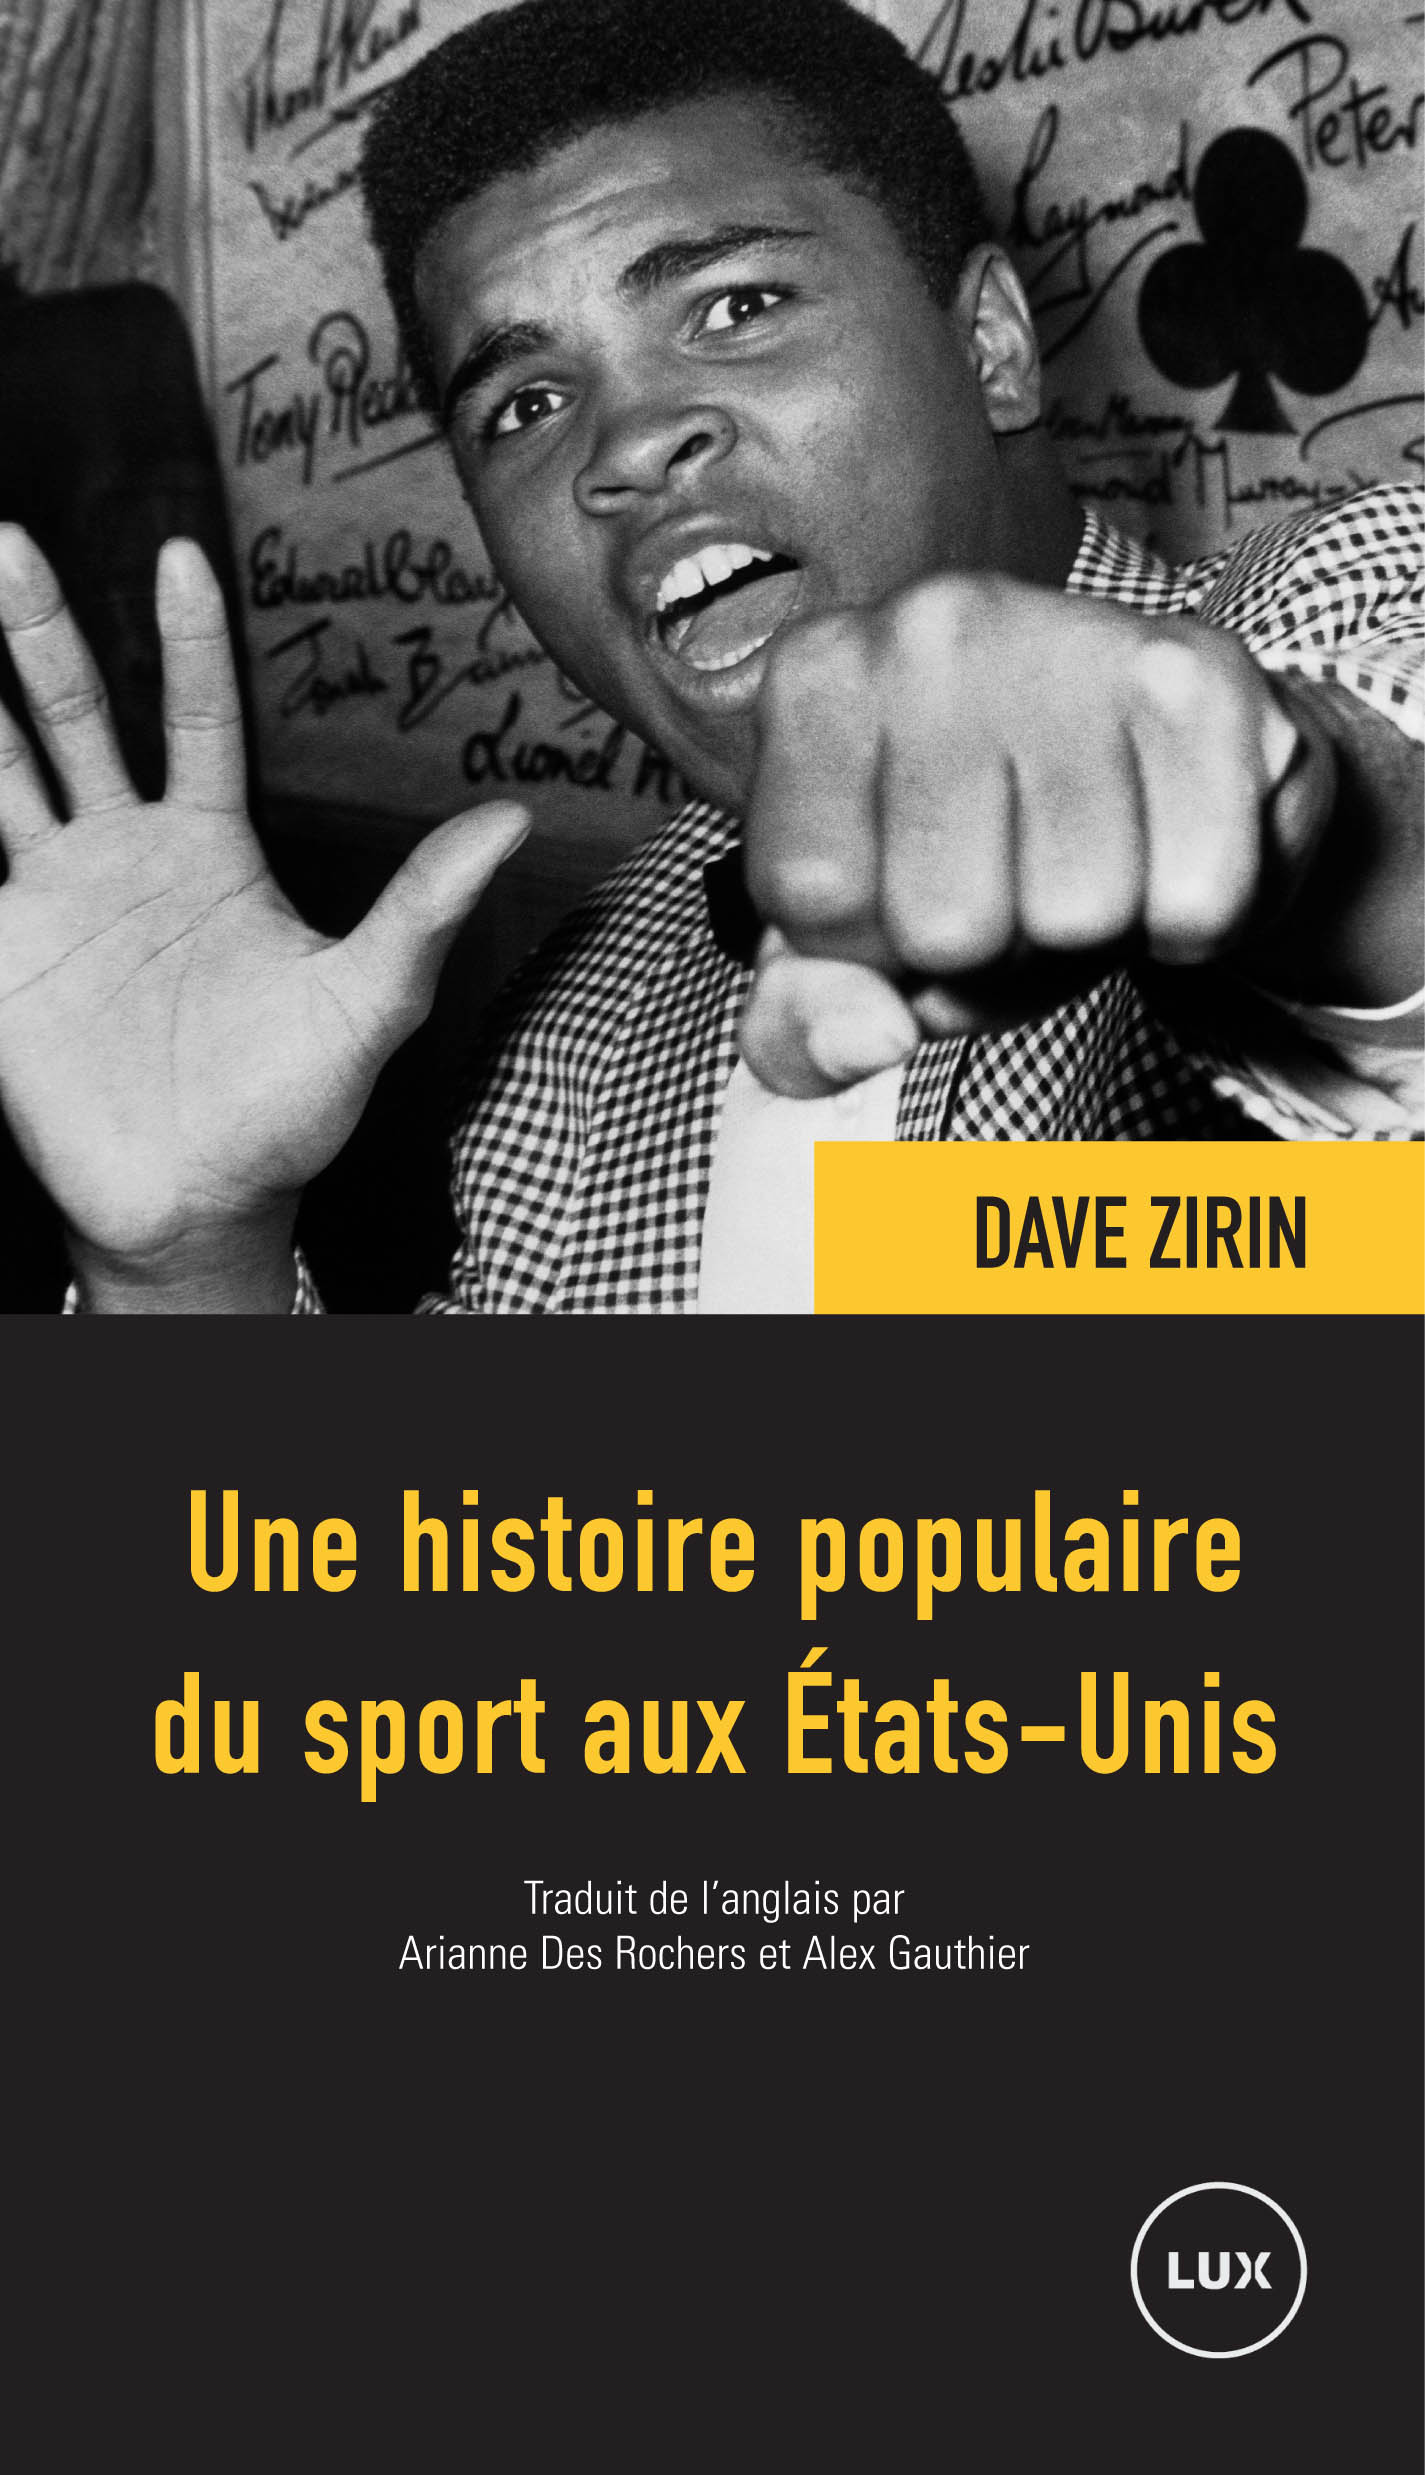 Avec son Histoire Populaire du Sport aux Etats-Unis, Dave Zirin donne un coup de poing dans la fourmillère